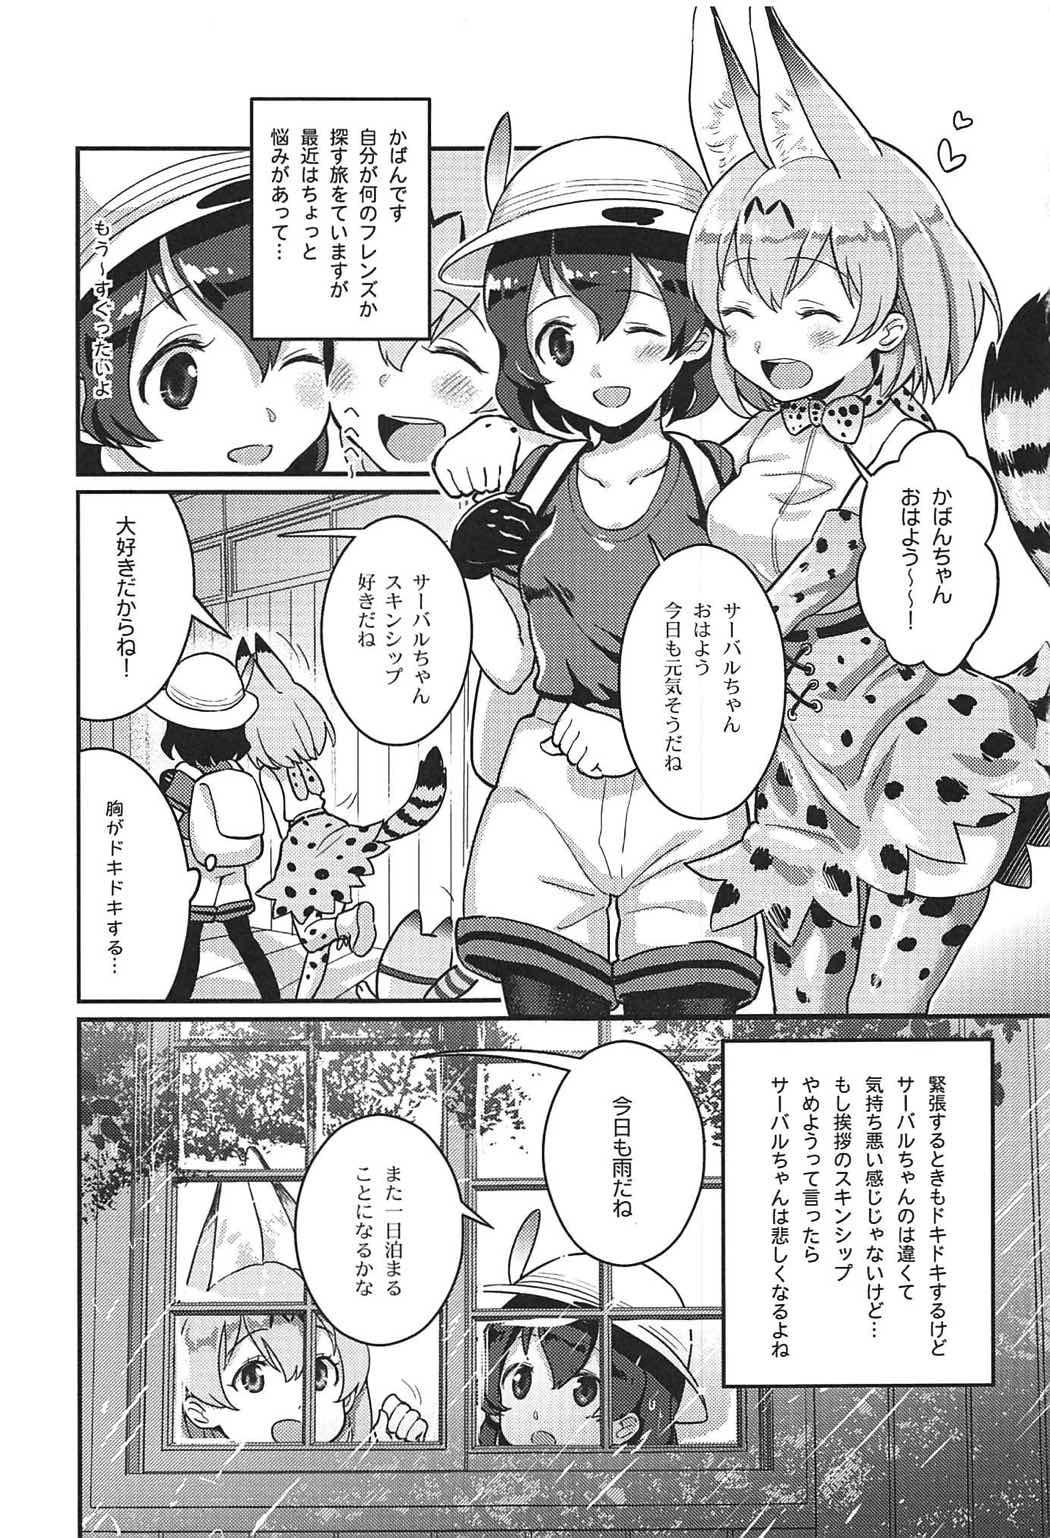 Bwc Daisuki ni Kimatteru!! - Kemono friends Twinks - Page 2